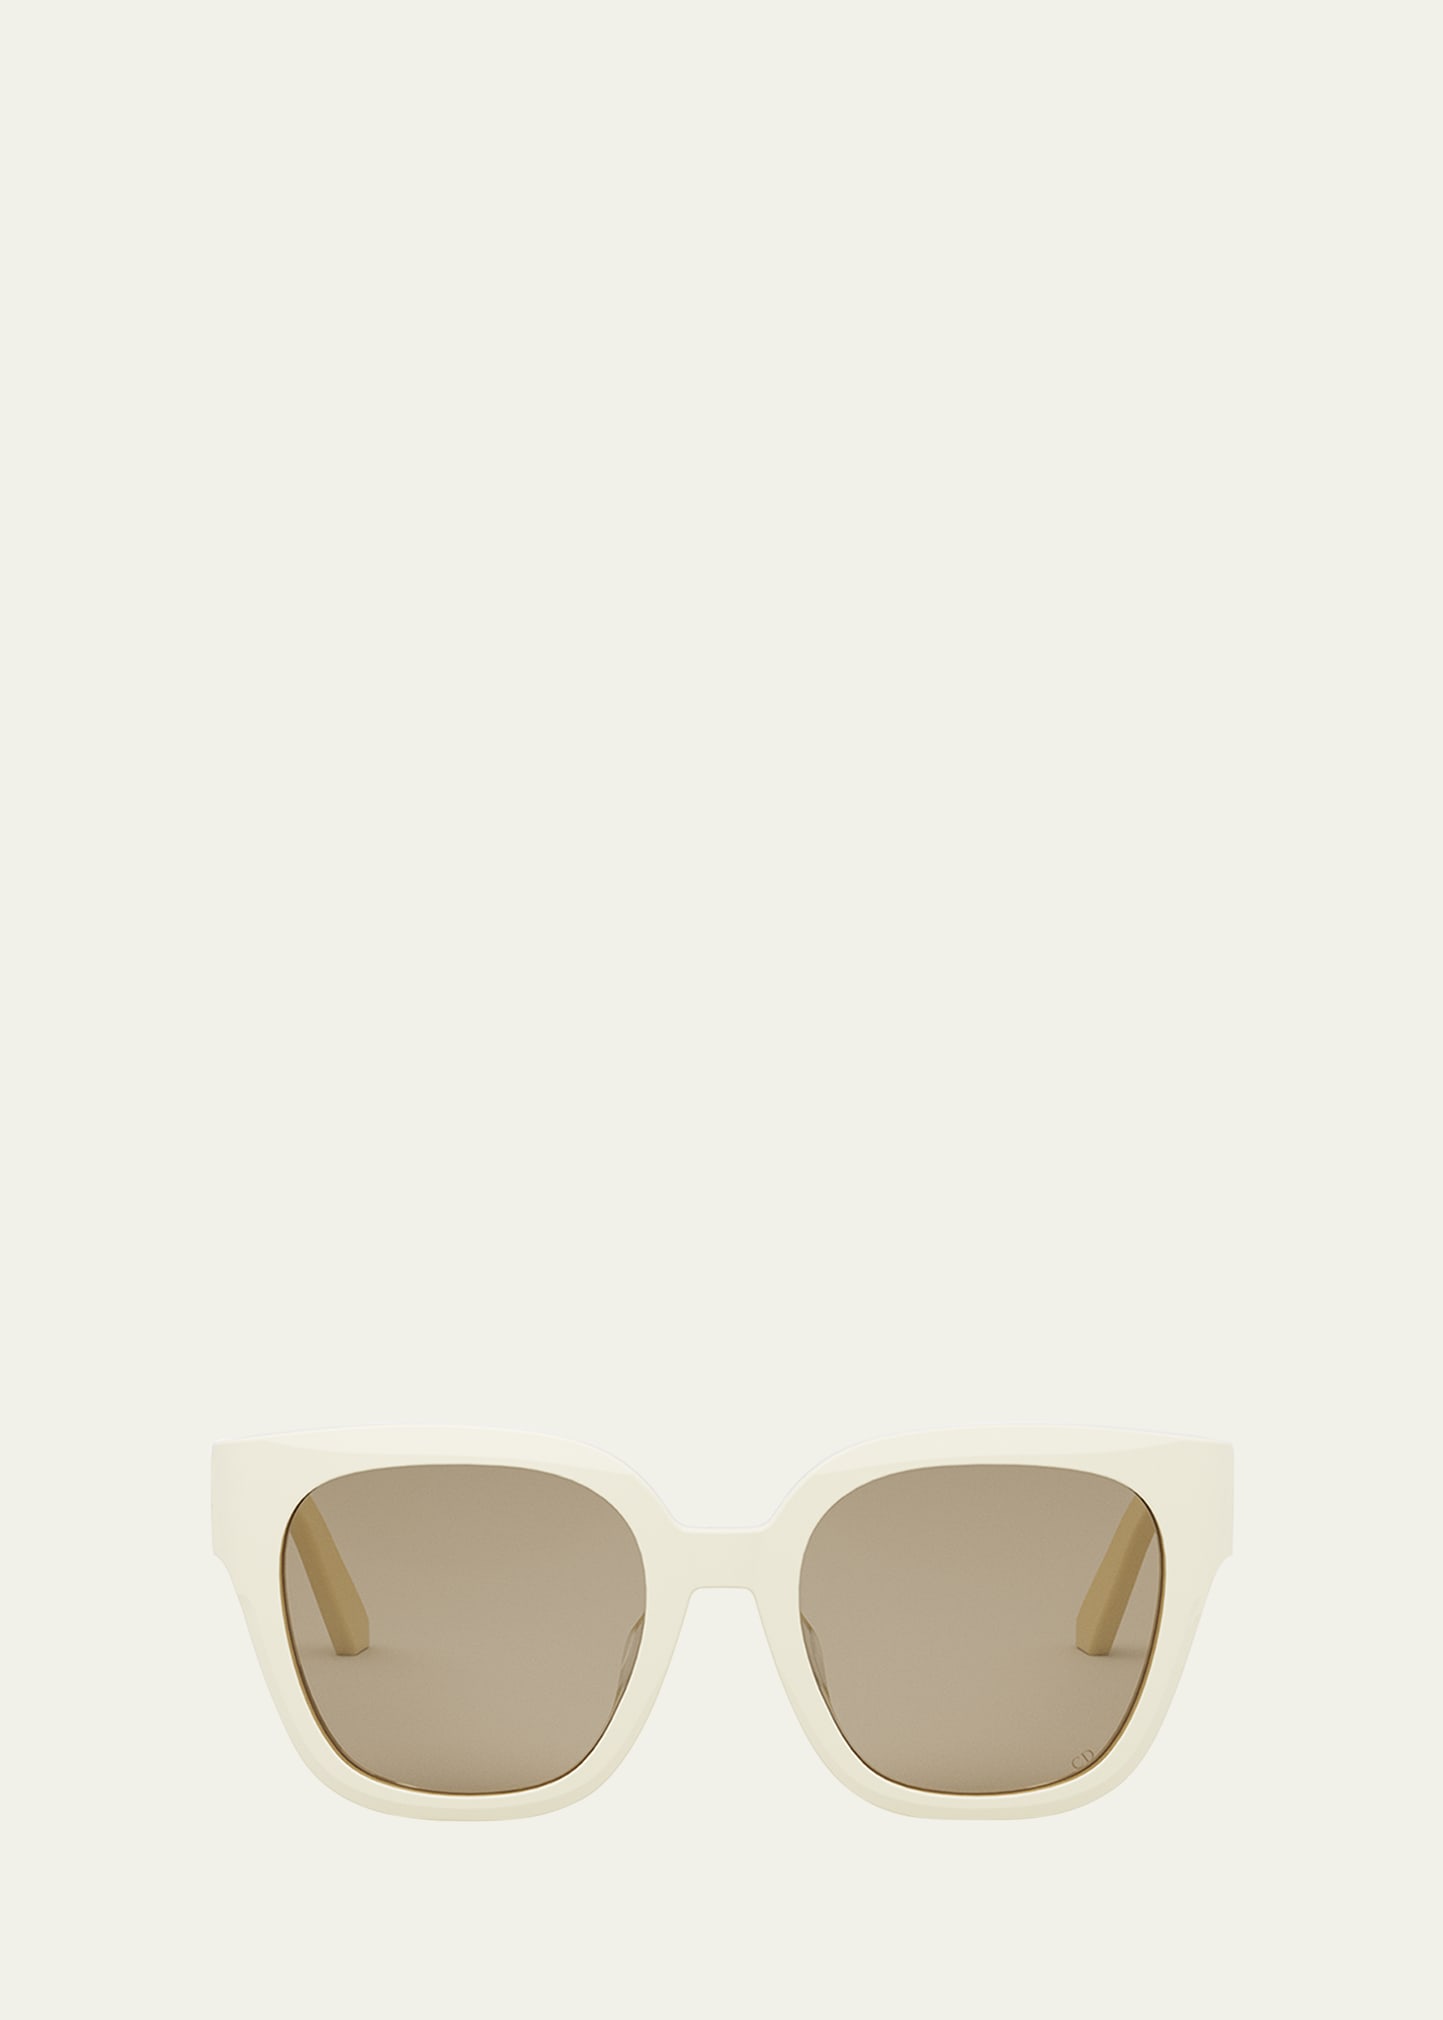 30Montaigne S10F Sunglasses